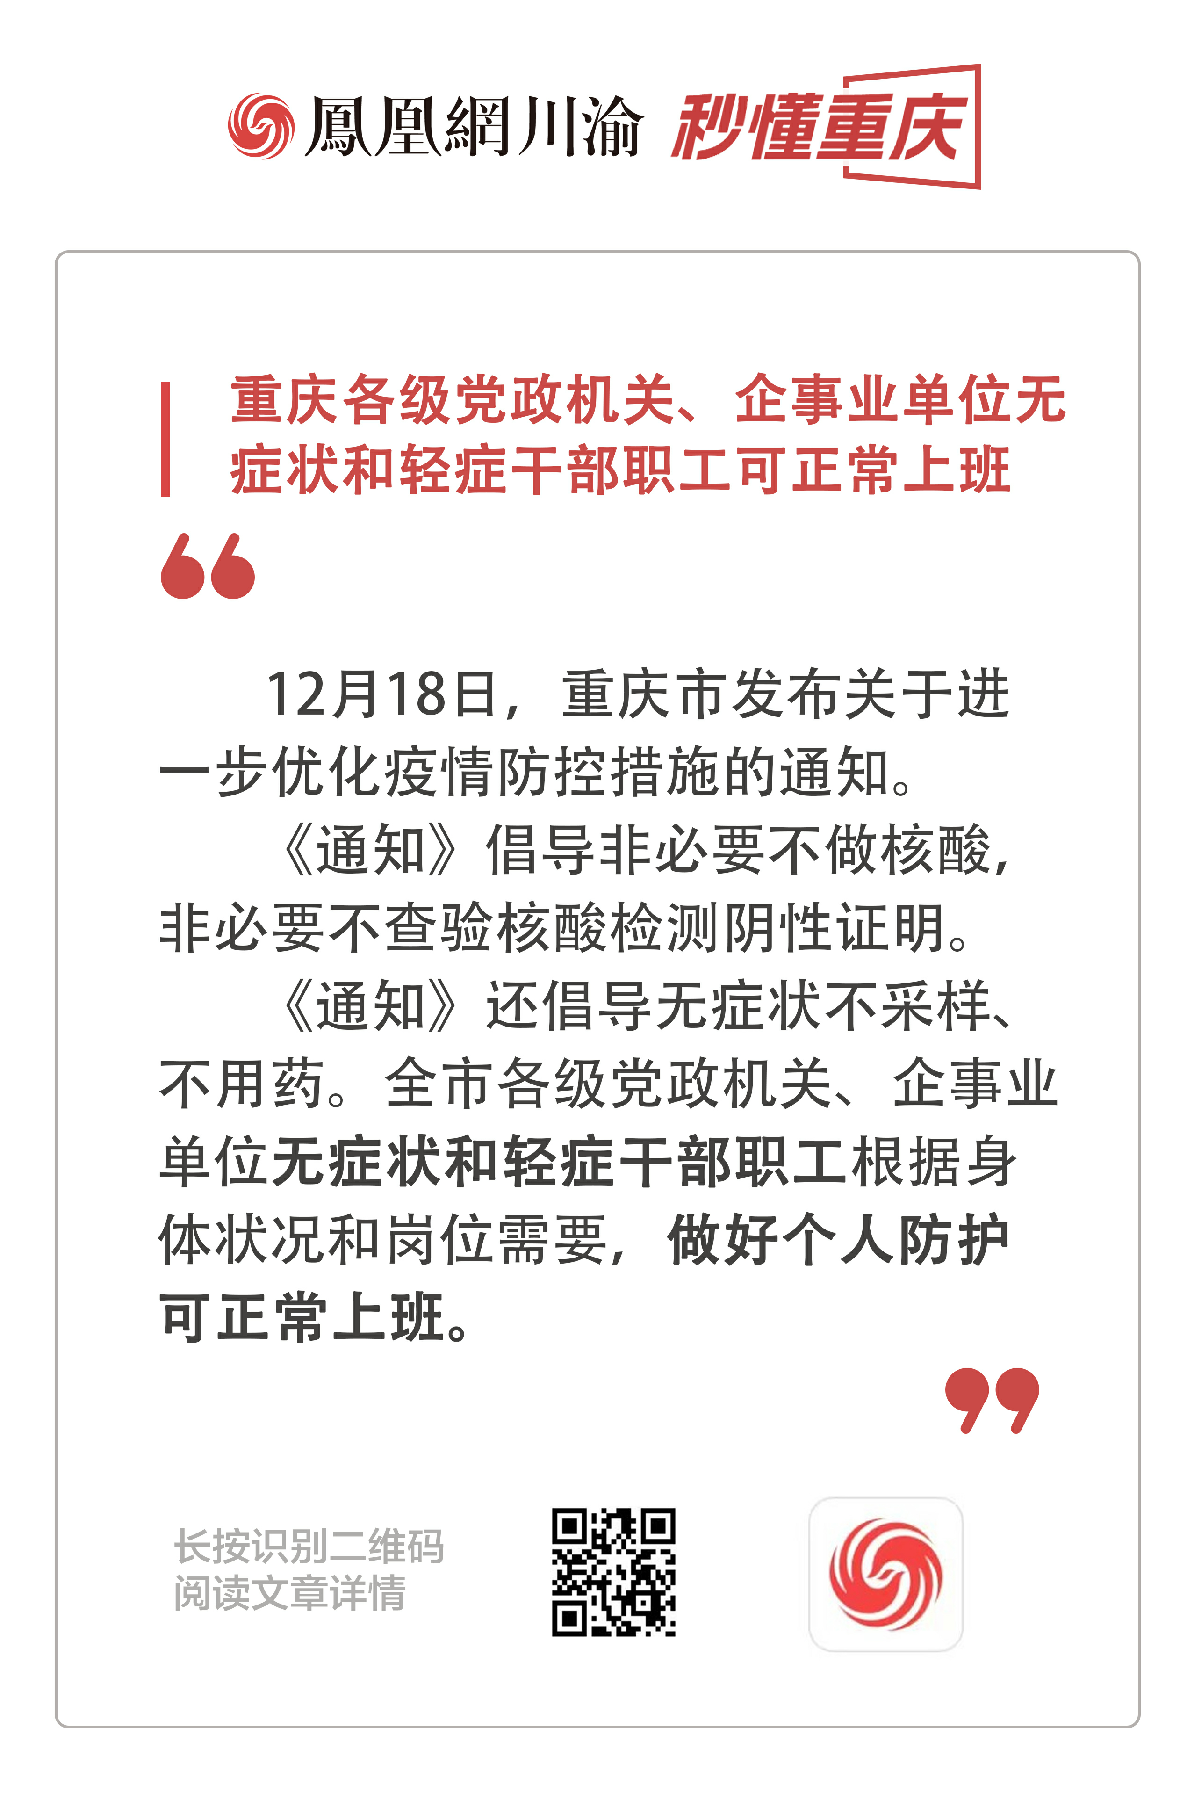 秒懂重庆 | 重庆各级党政机关、企事业单位无症状和轻症干部职工可正常上班